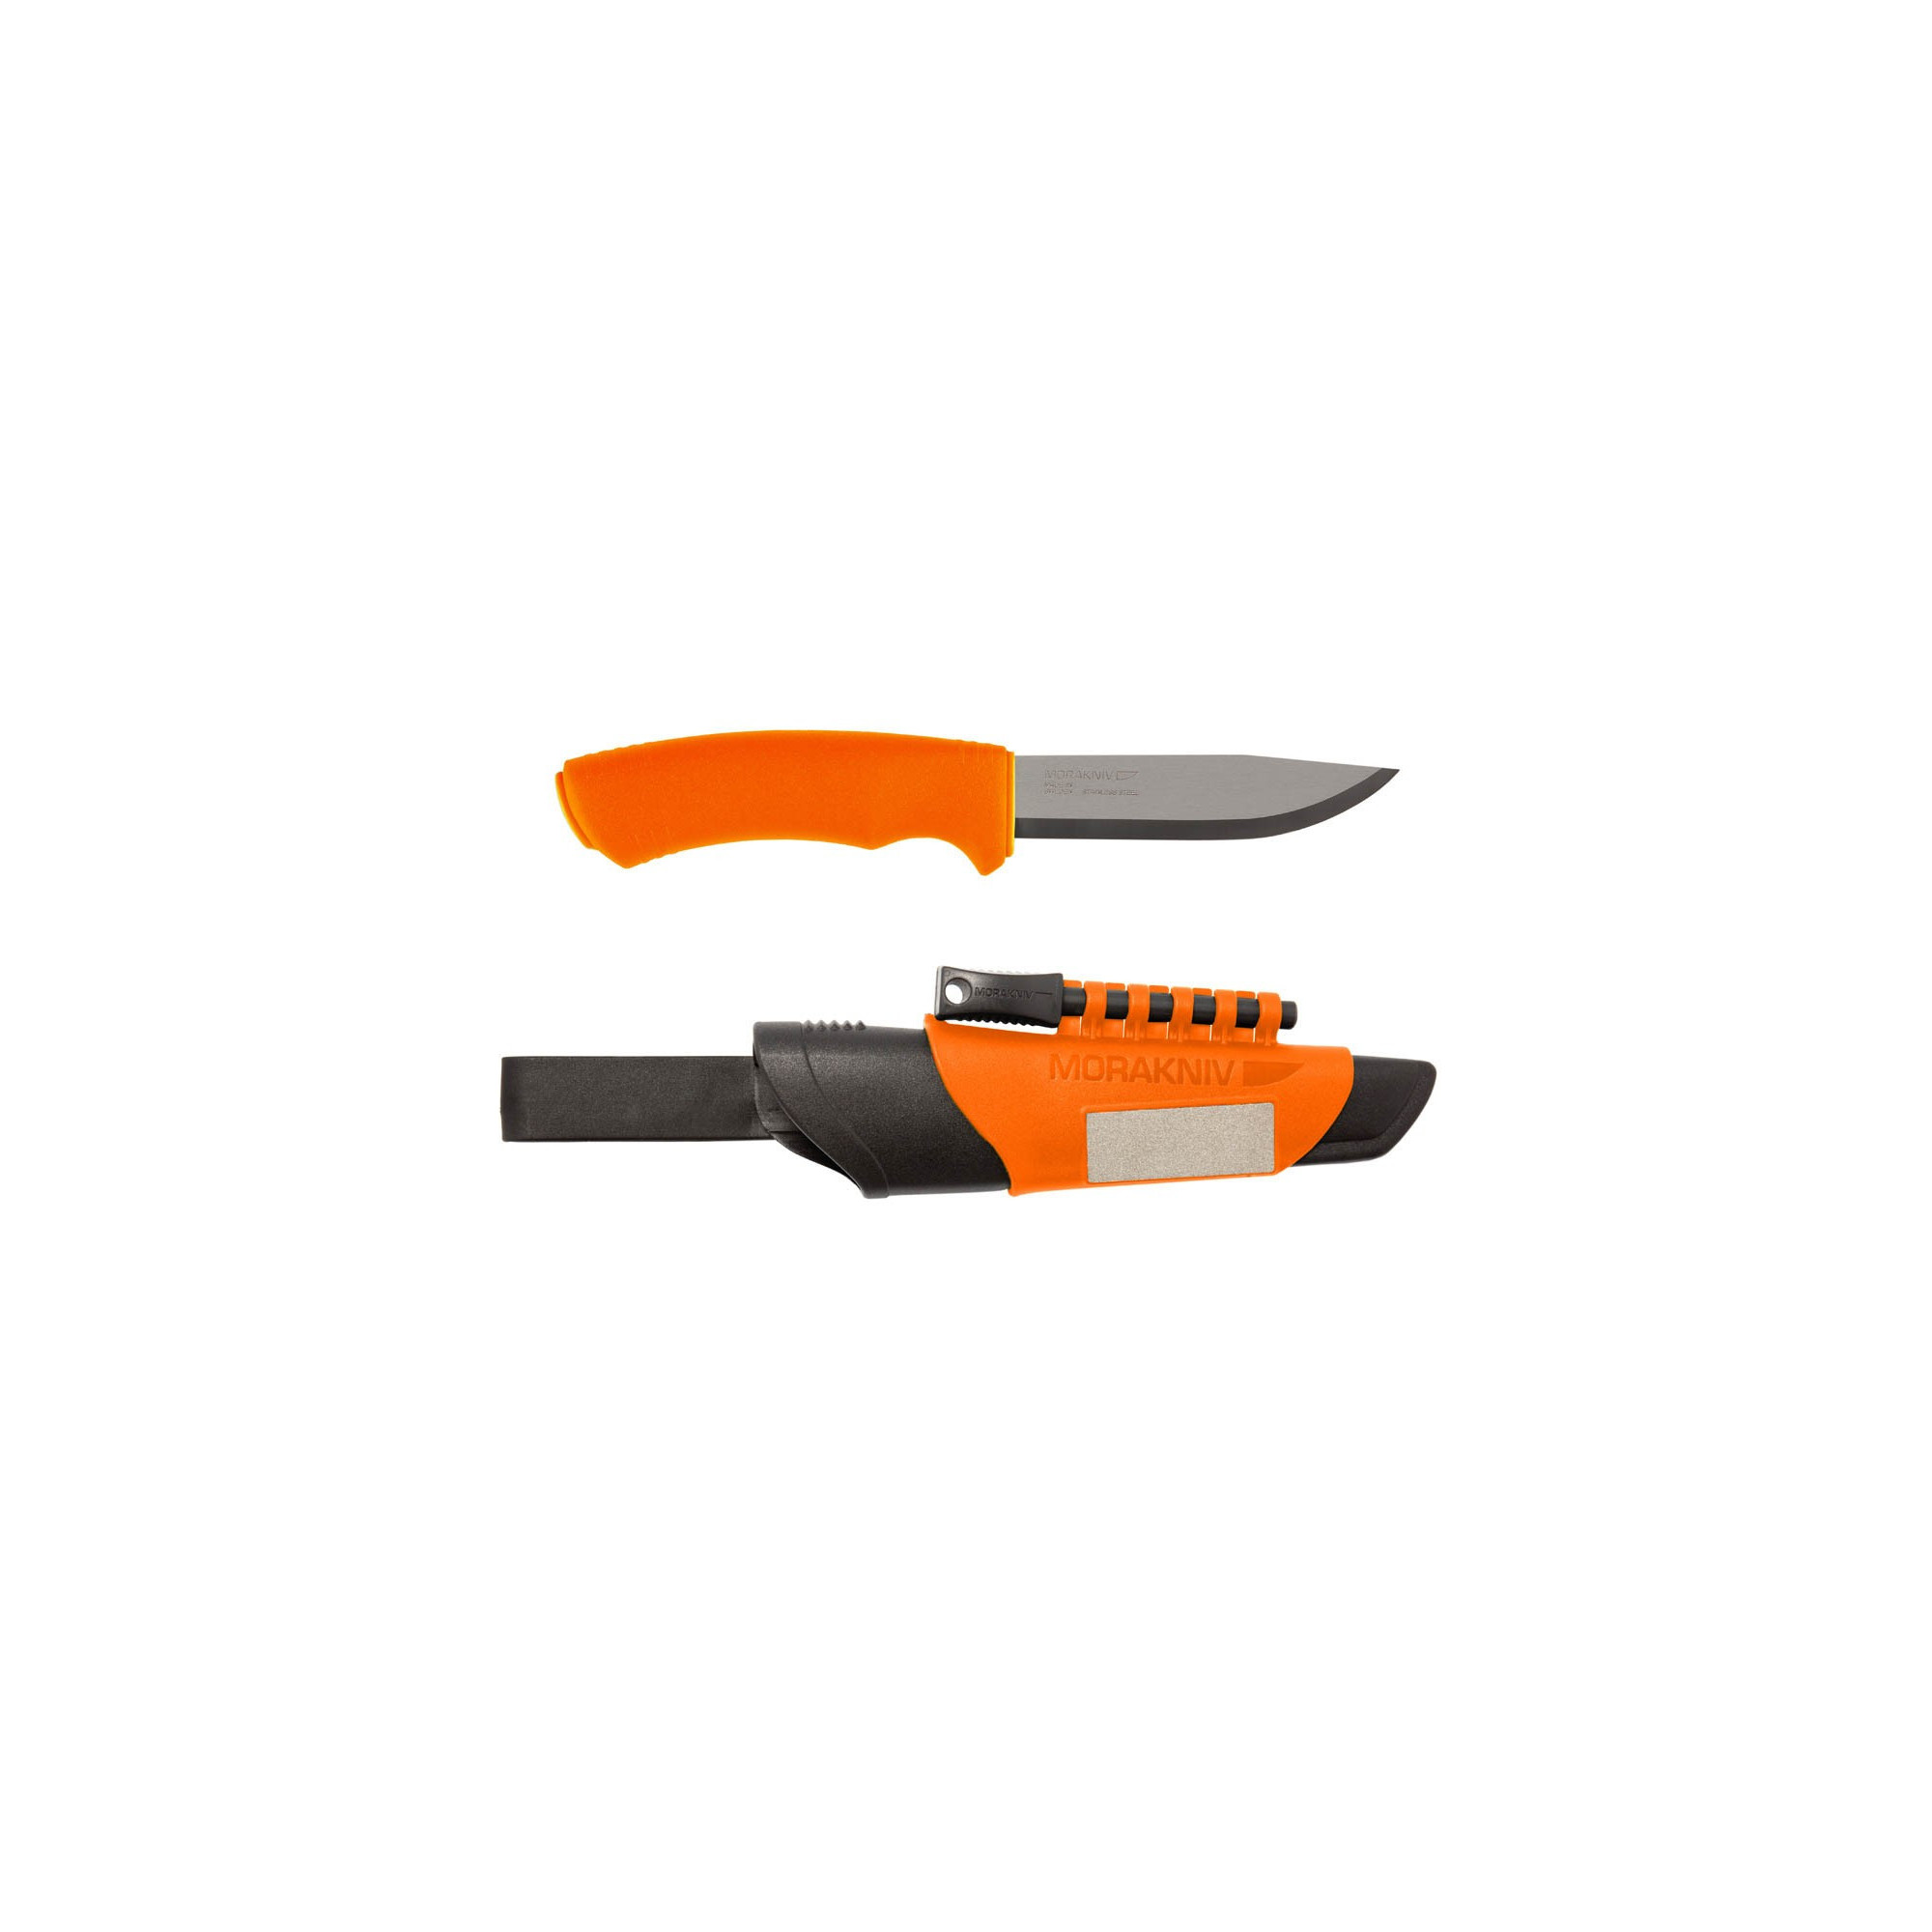 Couteau Mora bushcraft survival orange: pierre à feu, aiguiseur